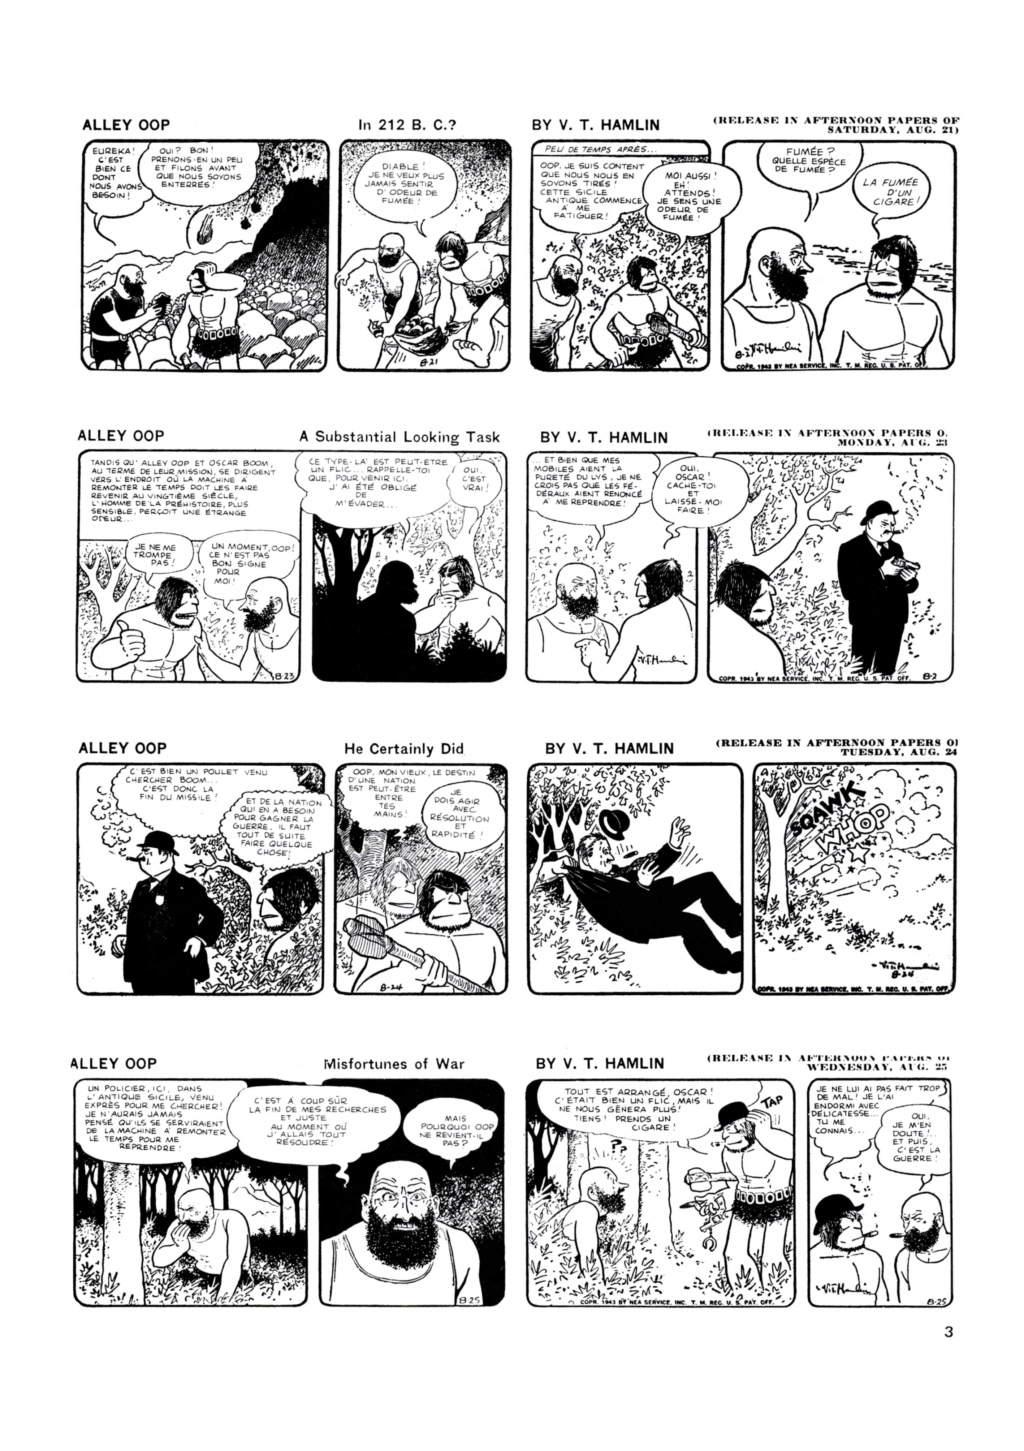 9ème Art, musée de la bande dessinée par Morris et Vankeer - Page 5 0325